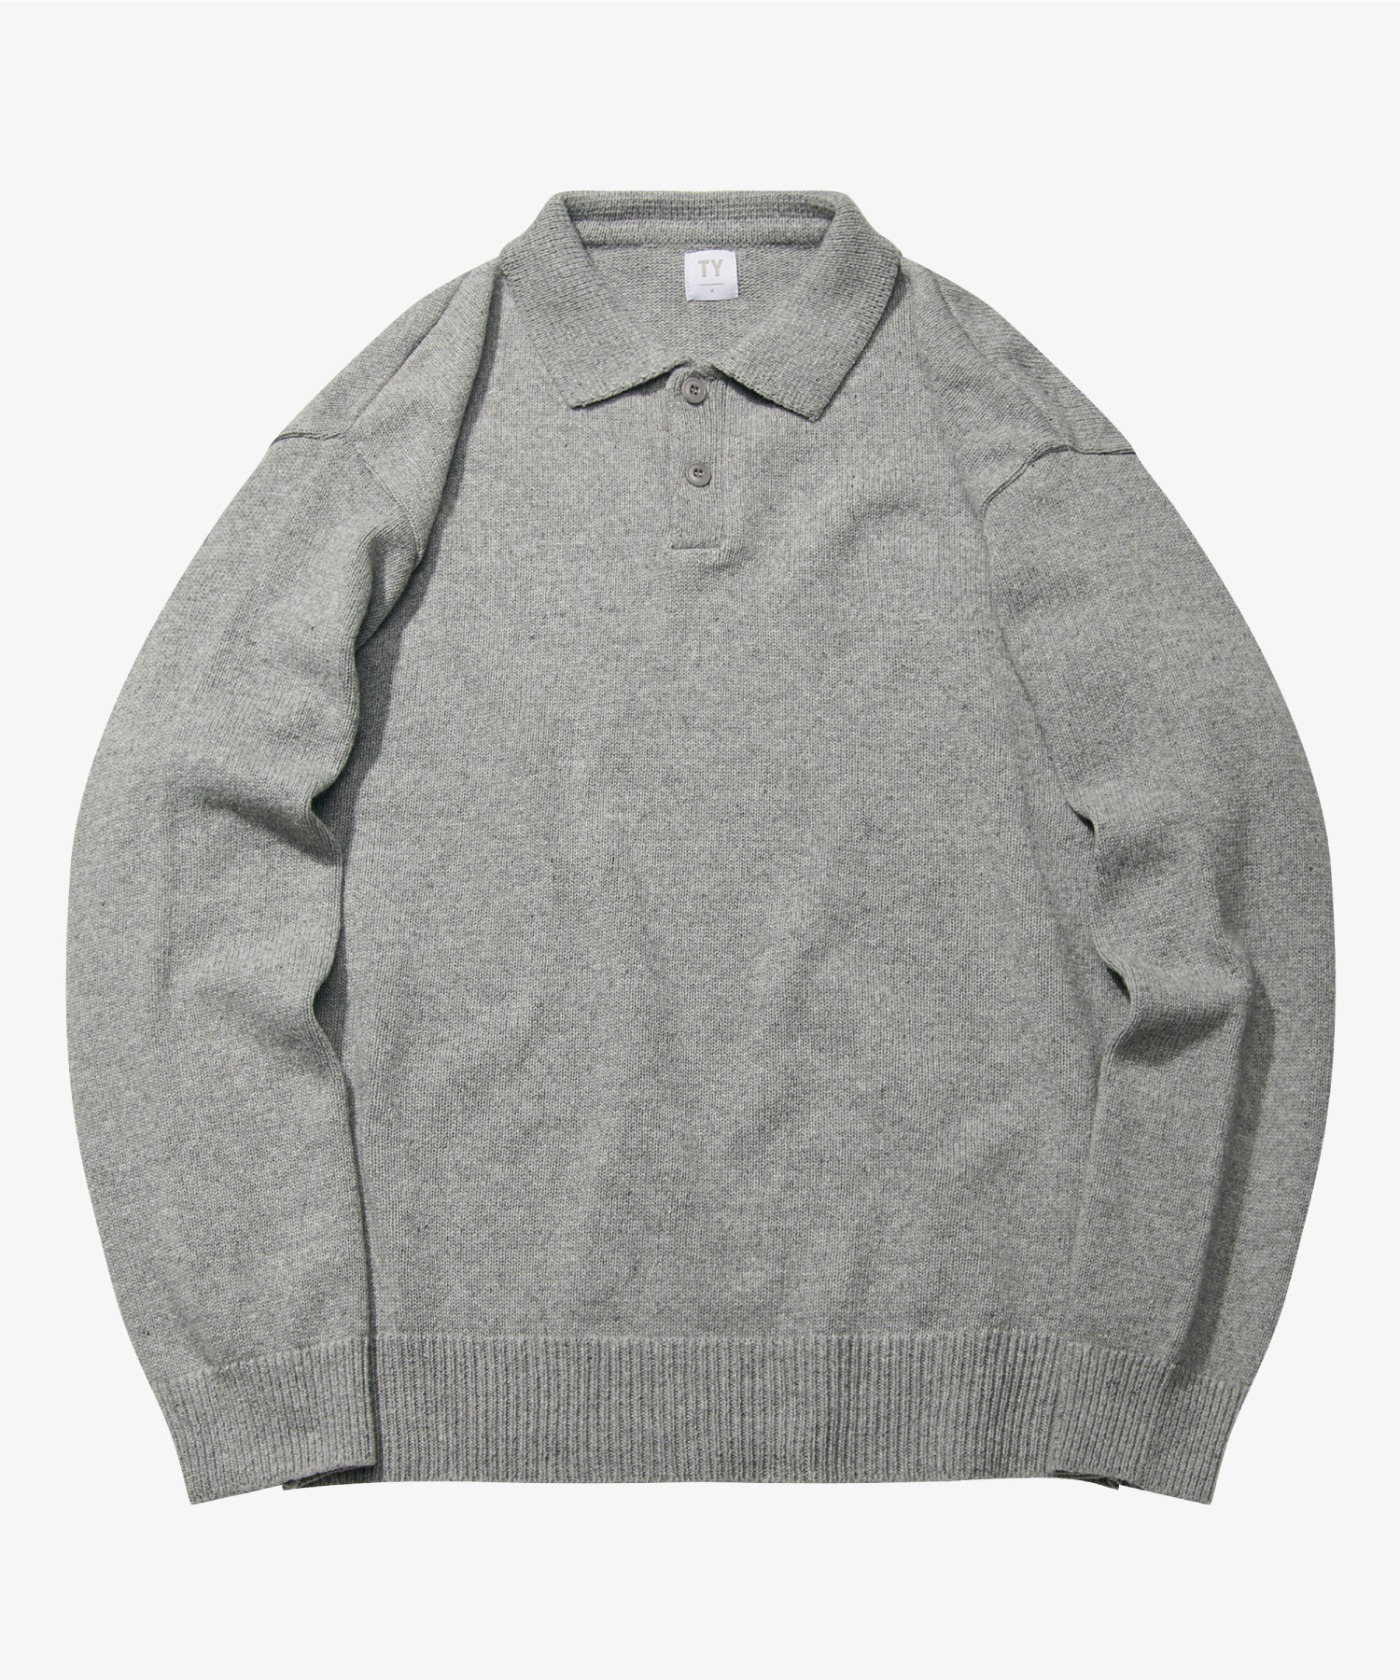 Pullover collar knit_Gray